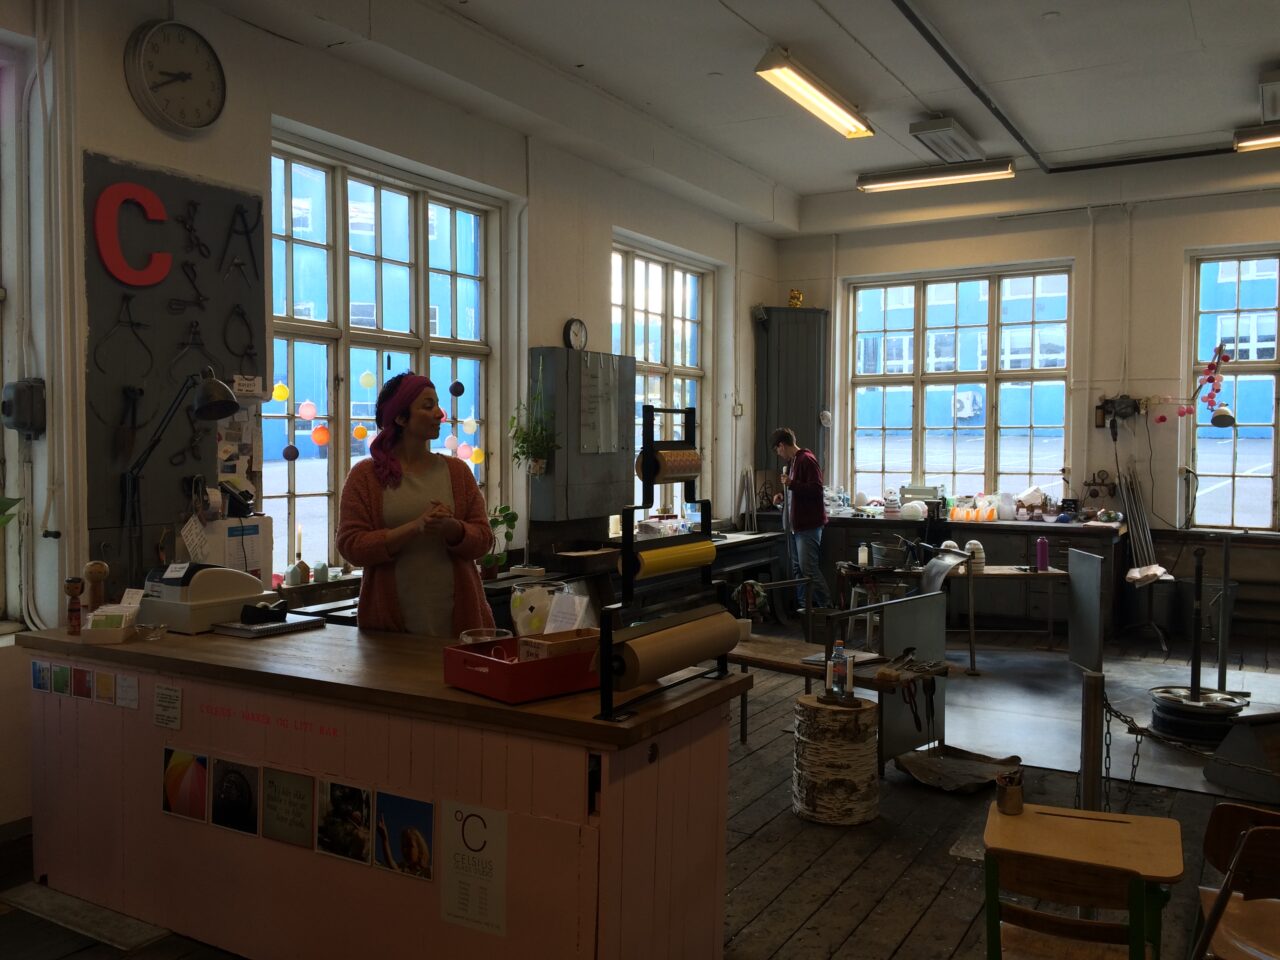 Reisetestere på besøk hos Devoldfabrikken i Ålesund